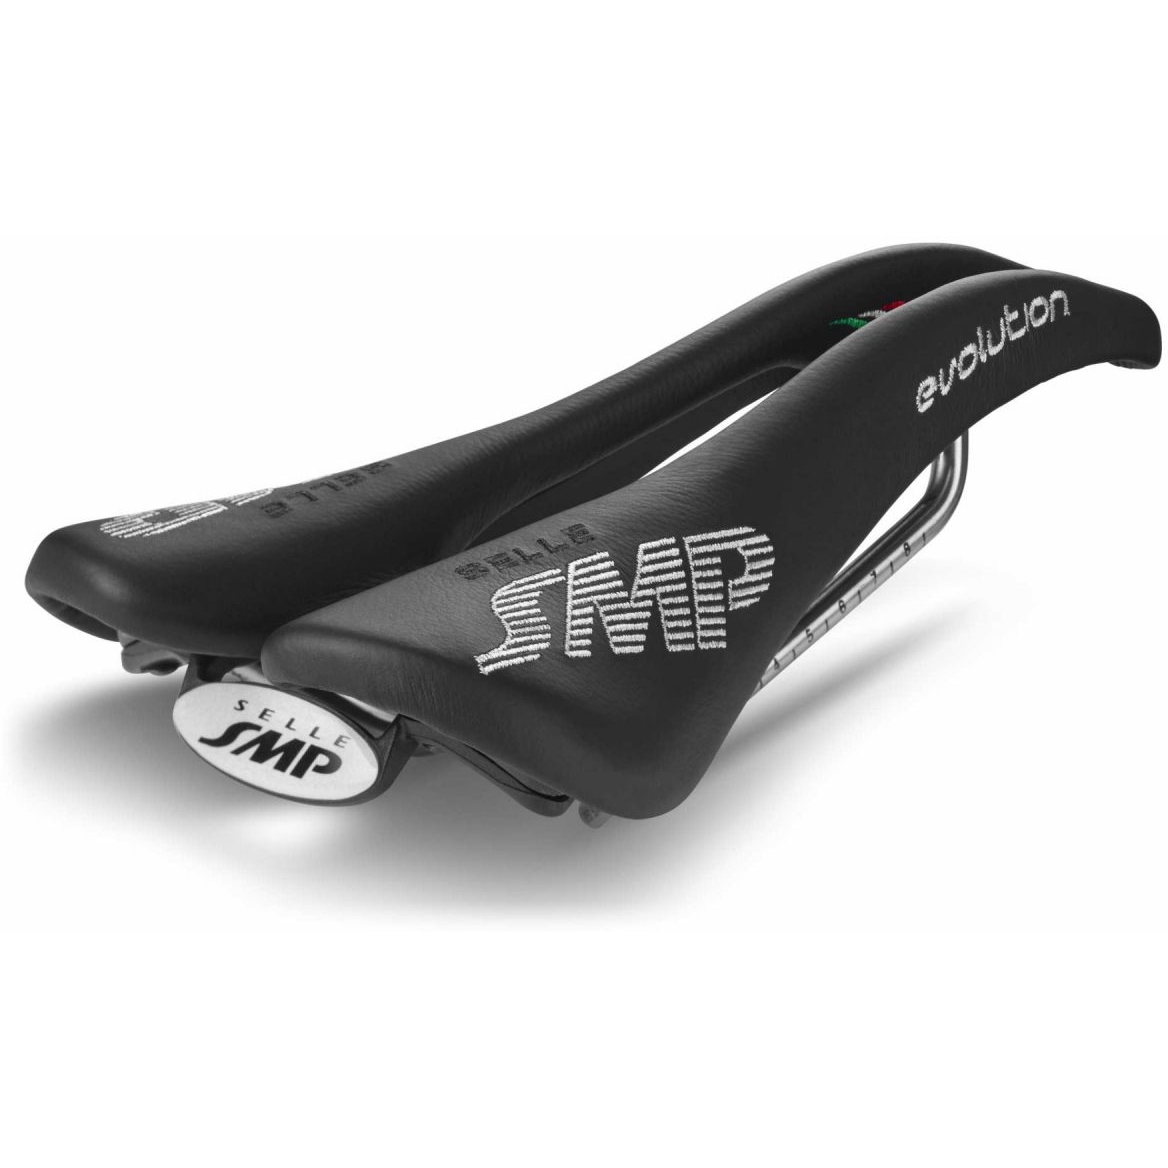 Produktbild von Selle SMP Evolution Sattel - schwarz